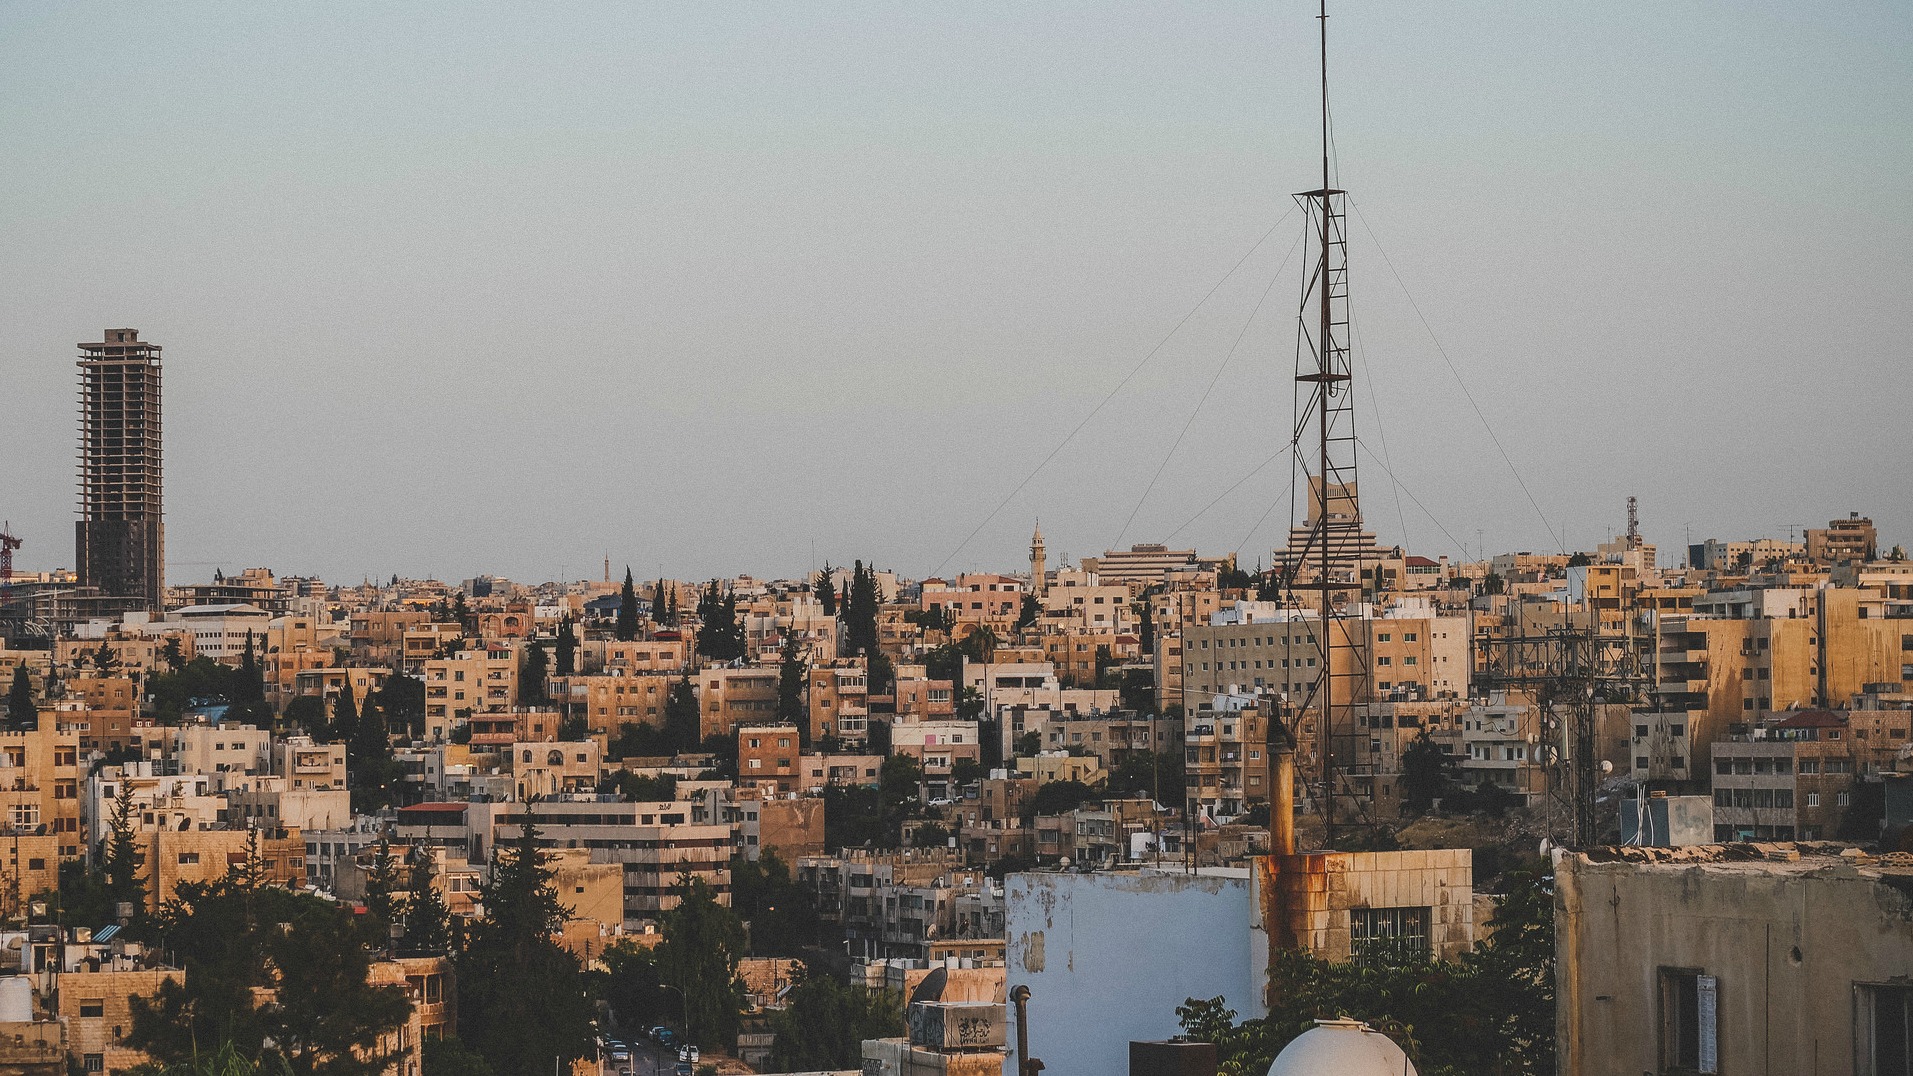 Vue de la ville d'Amman, en Jordanie (Photo:Florent Lamoureux/Flickr/CC BY-NC-ND 2.0)